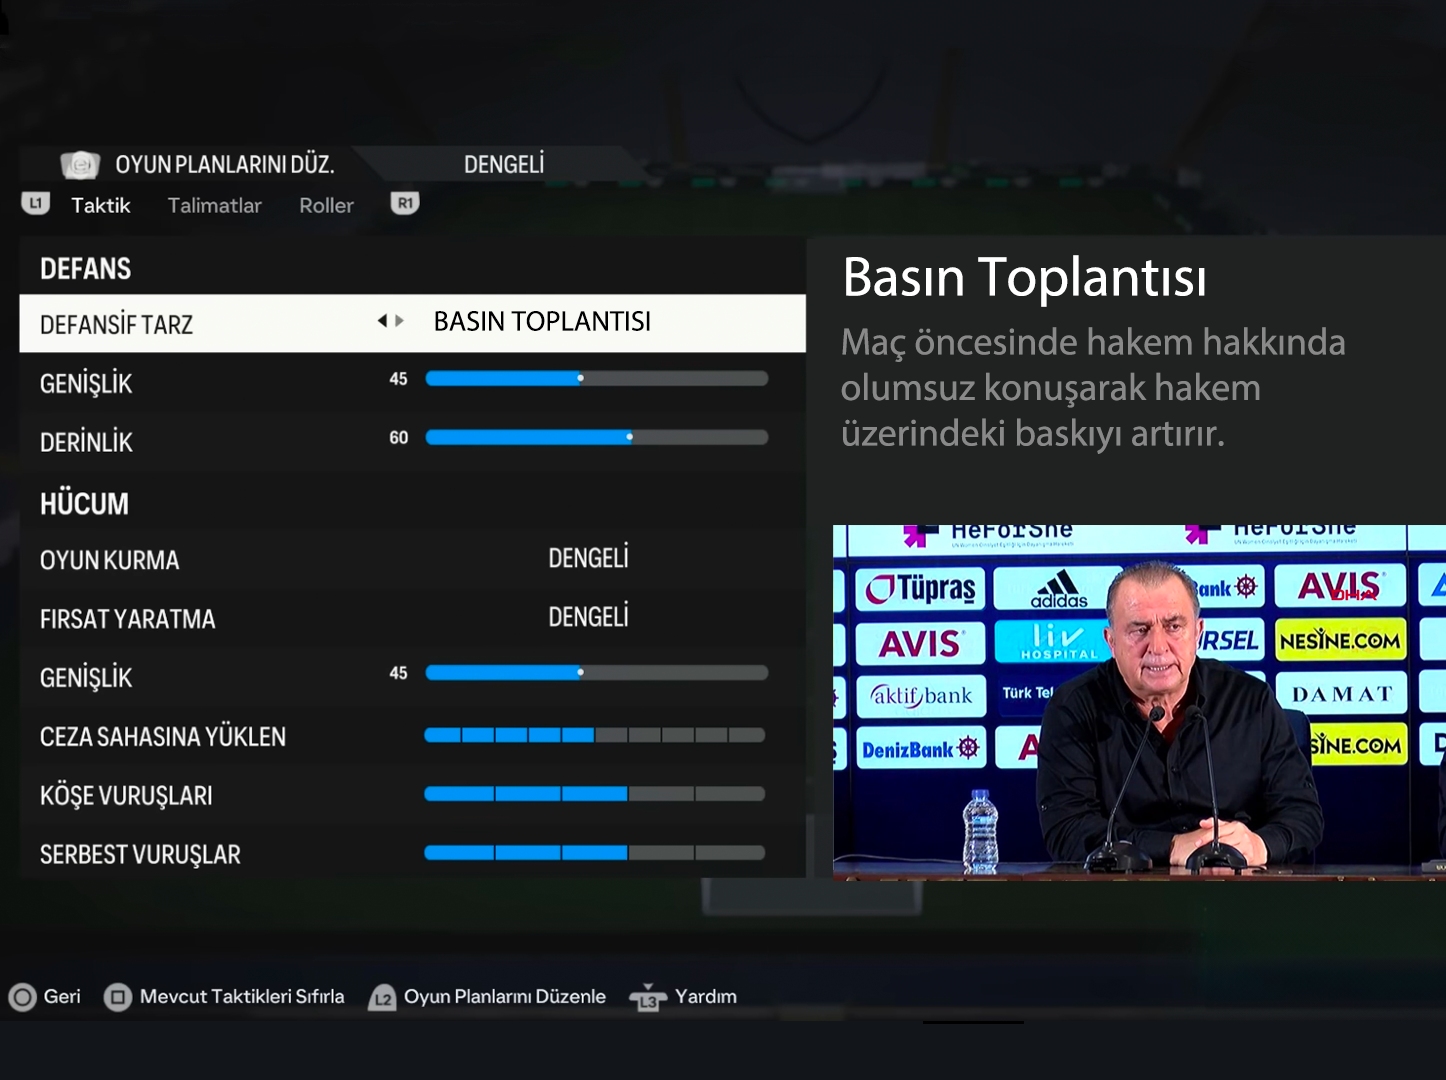 Ulaş Utku Bozdoğan: Böyle Lige Böyle Oyun: FC 24'te Türk Futboluna Özel Modlar ve Taktikler Olsa Nasıl Olurdu? 41